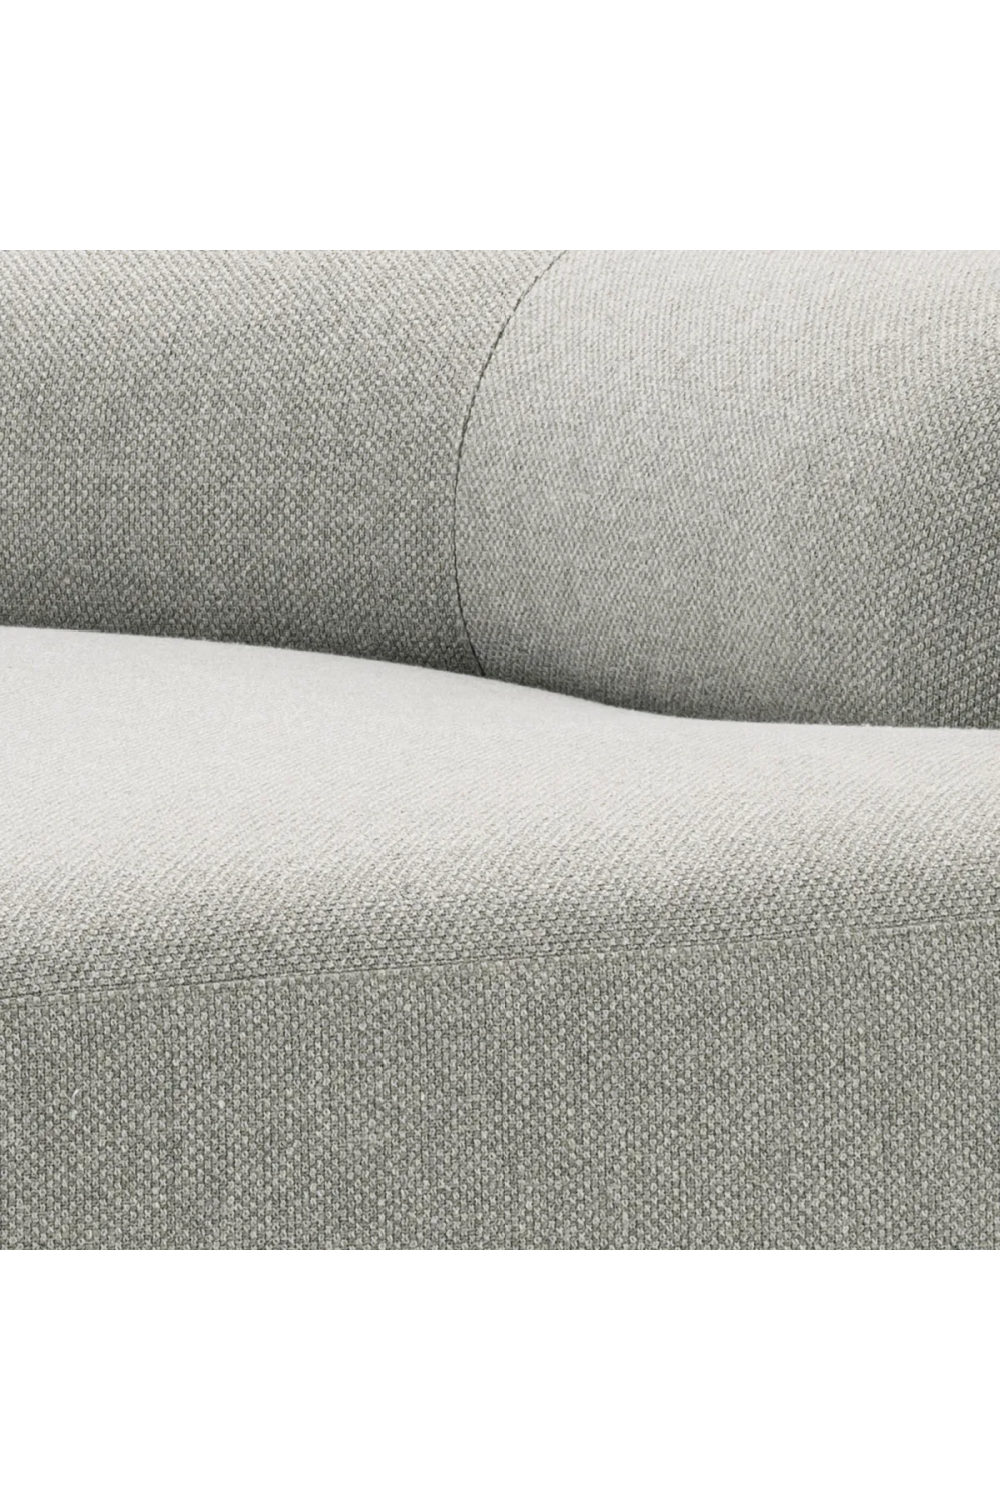 Irregular-Shaped Gray Sofa | Eichholtz Taraval | Oroa.com